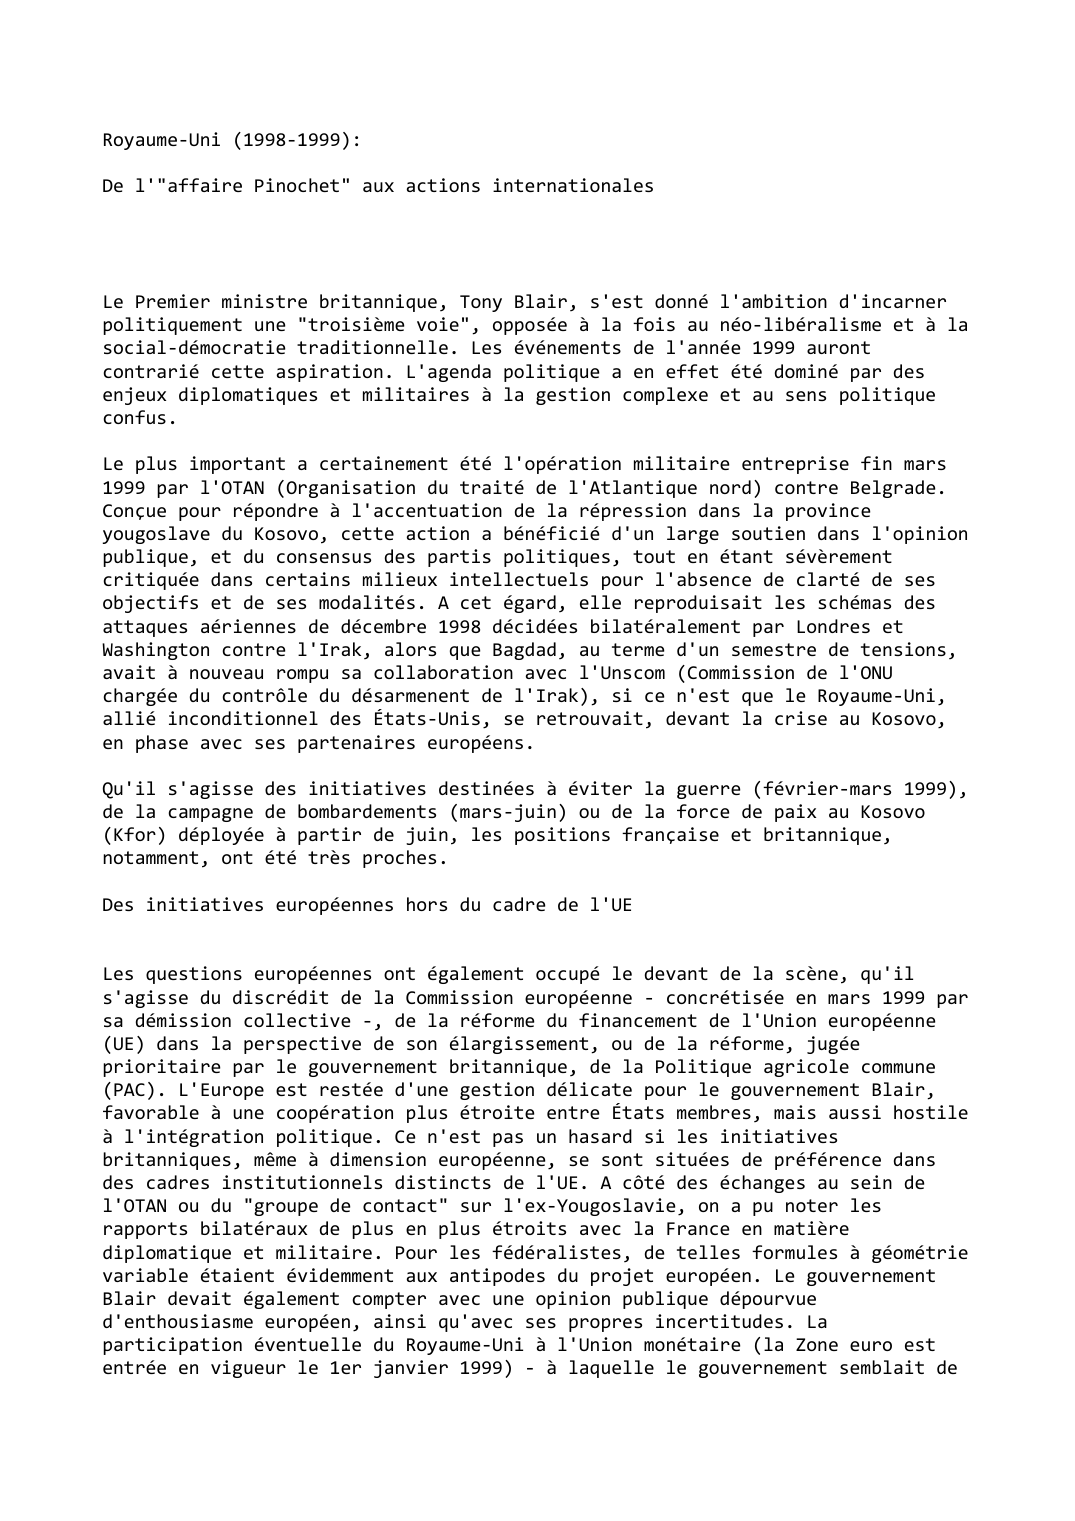 Prévisualisation du document Royaume-Uni (1998-1999):

De l'"affaire Pinochet" aux actions internationales